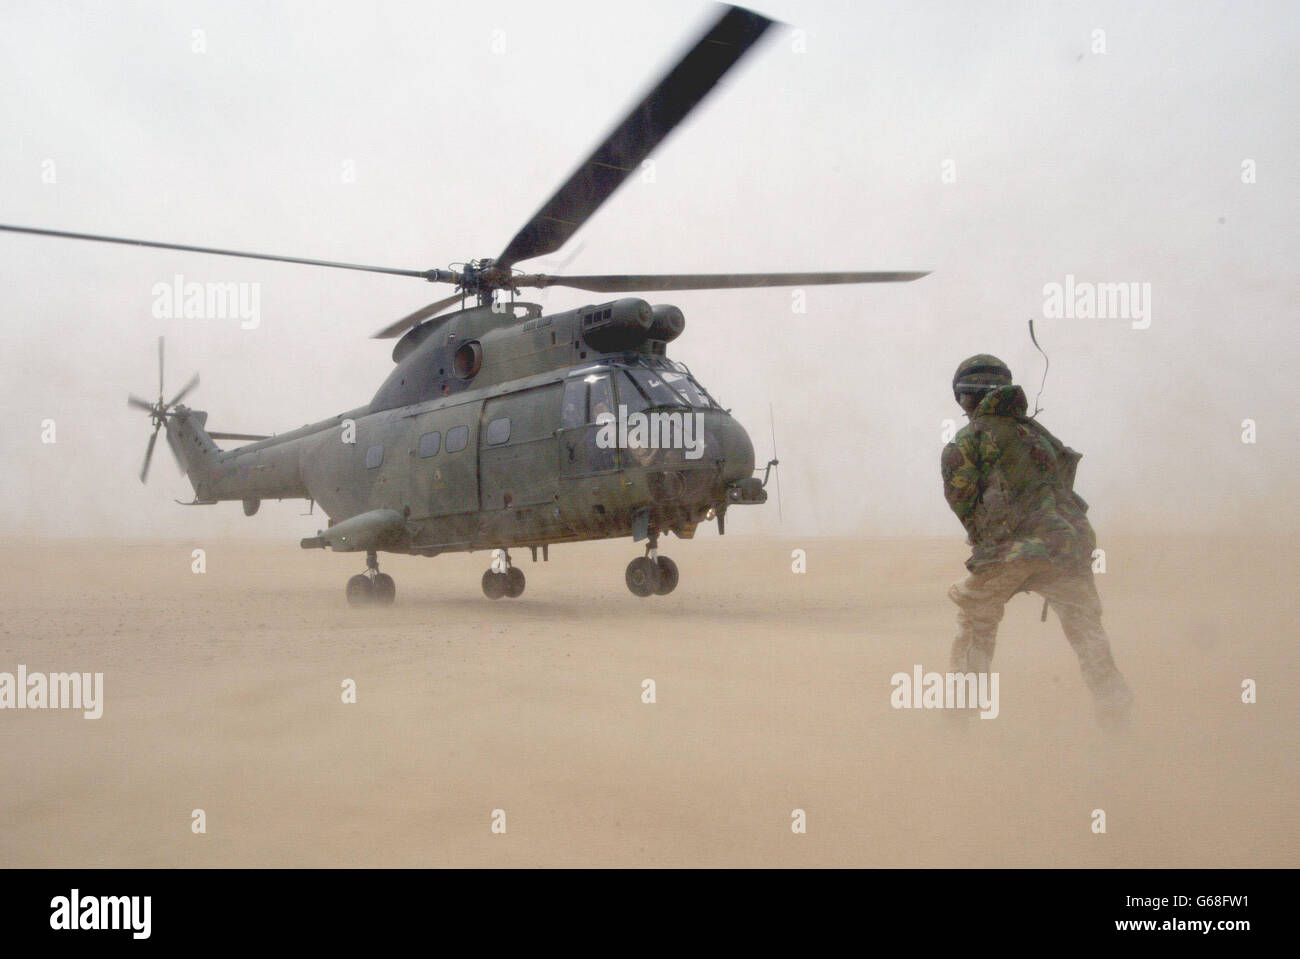 Un Puma británico de la Fuerza Aérea Real, una fuerza conjunta de helicópteros, se prepara para despegar mientras un maestro de carga observa durante un diseño de operación de asalto aéreo de práctica para capturar aeródromos enemigos, en el desierto fuera de la ciudad de Kuwait. Foto de stock